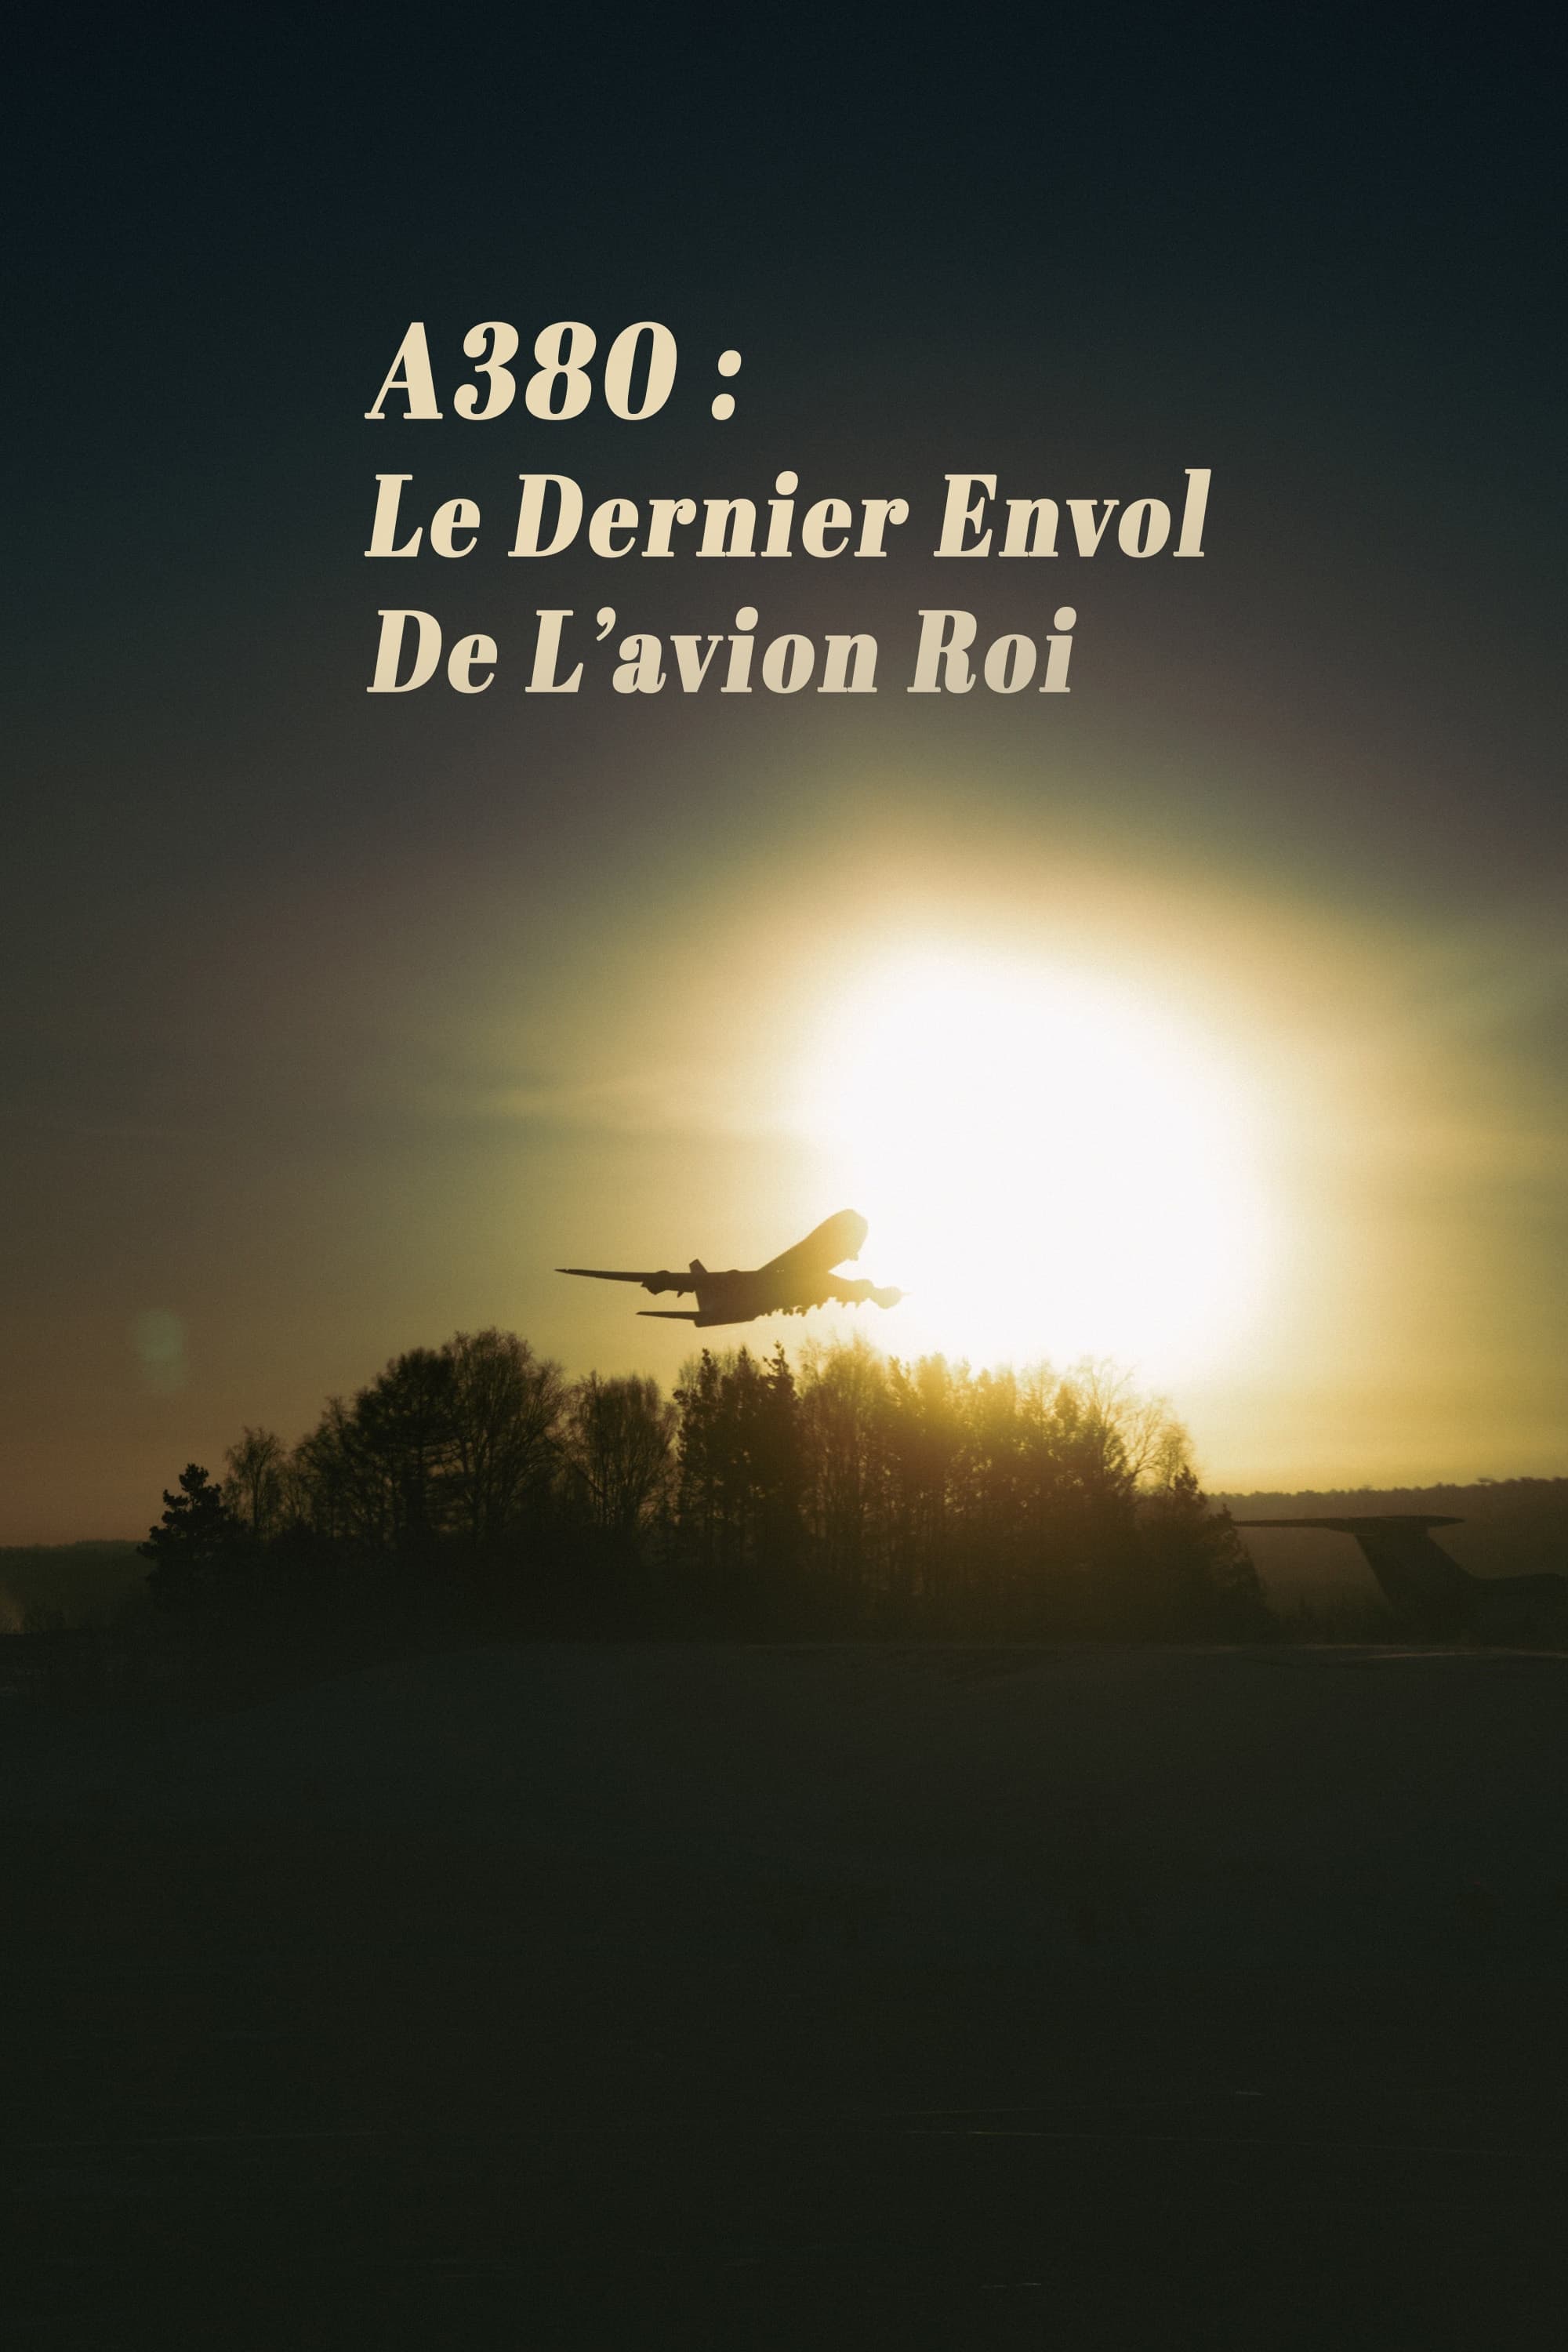 A380 : Le Dernier Envol de lavion roi